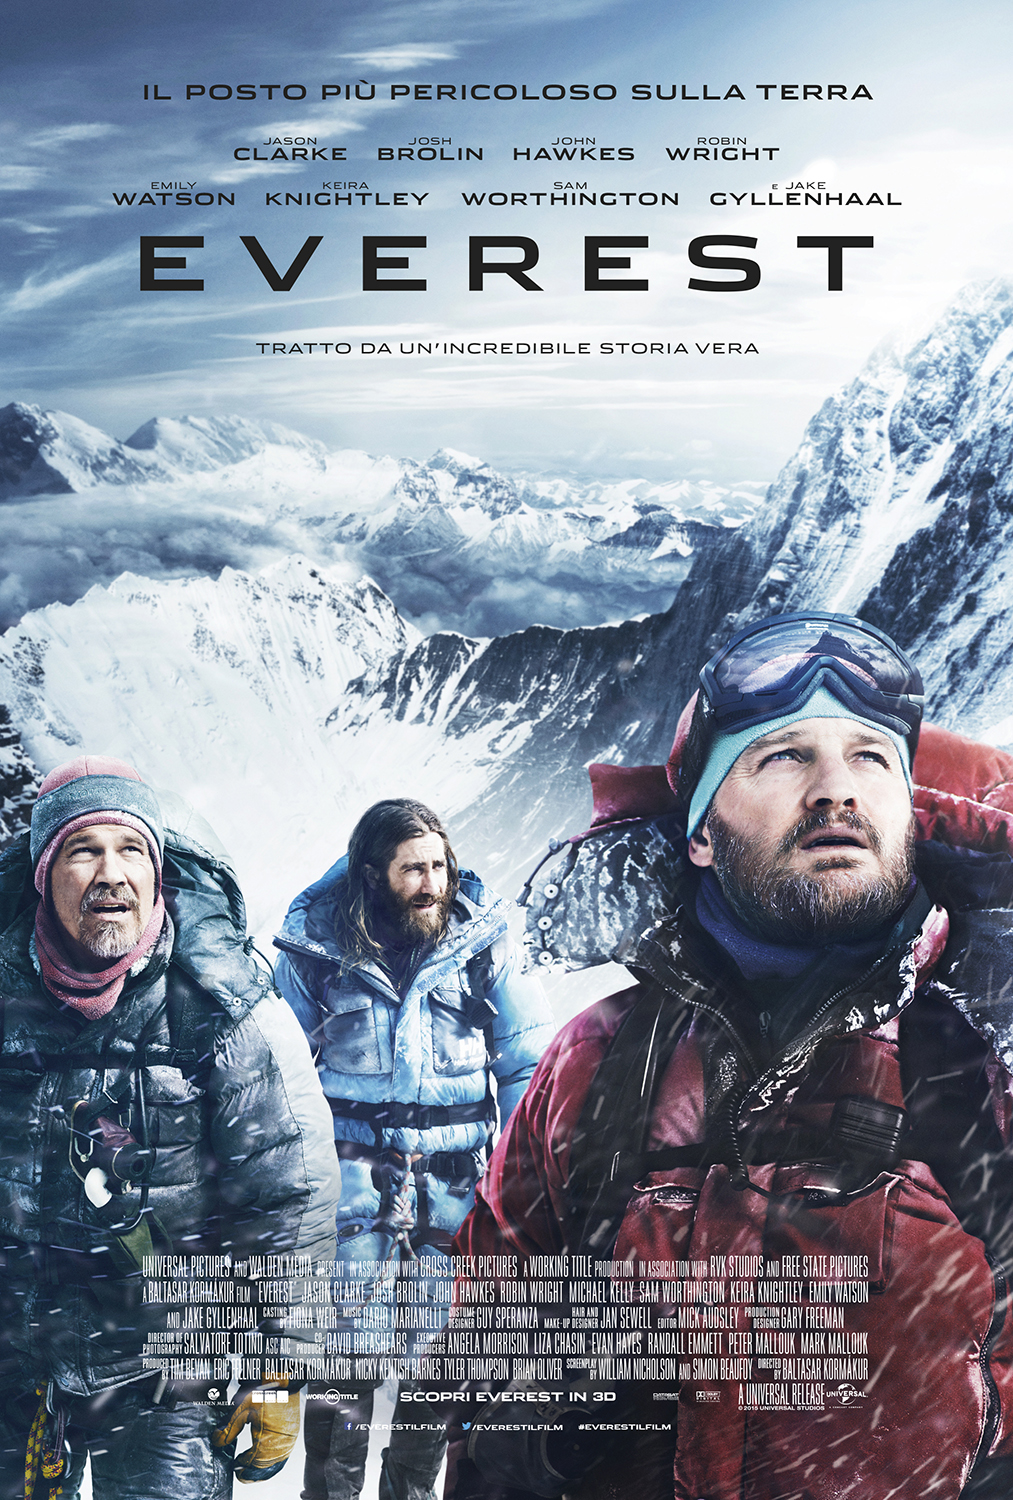 Italy_Everest_Trio